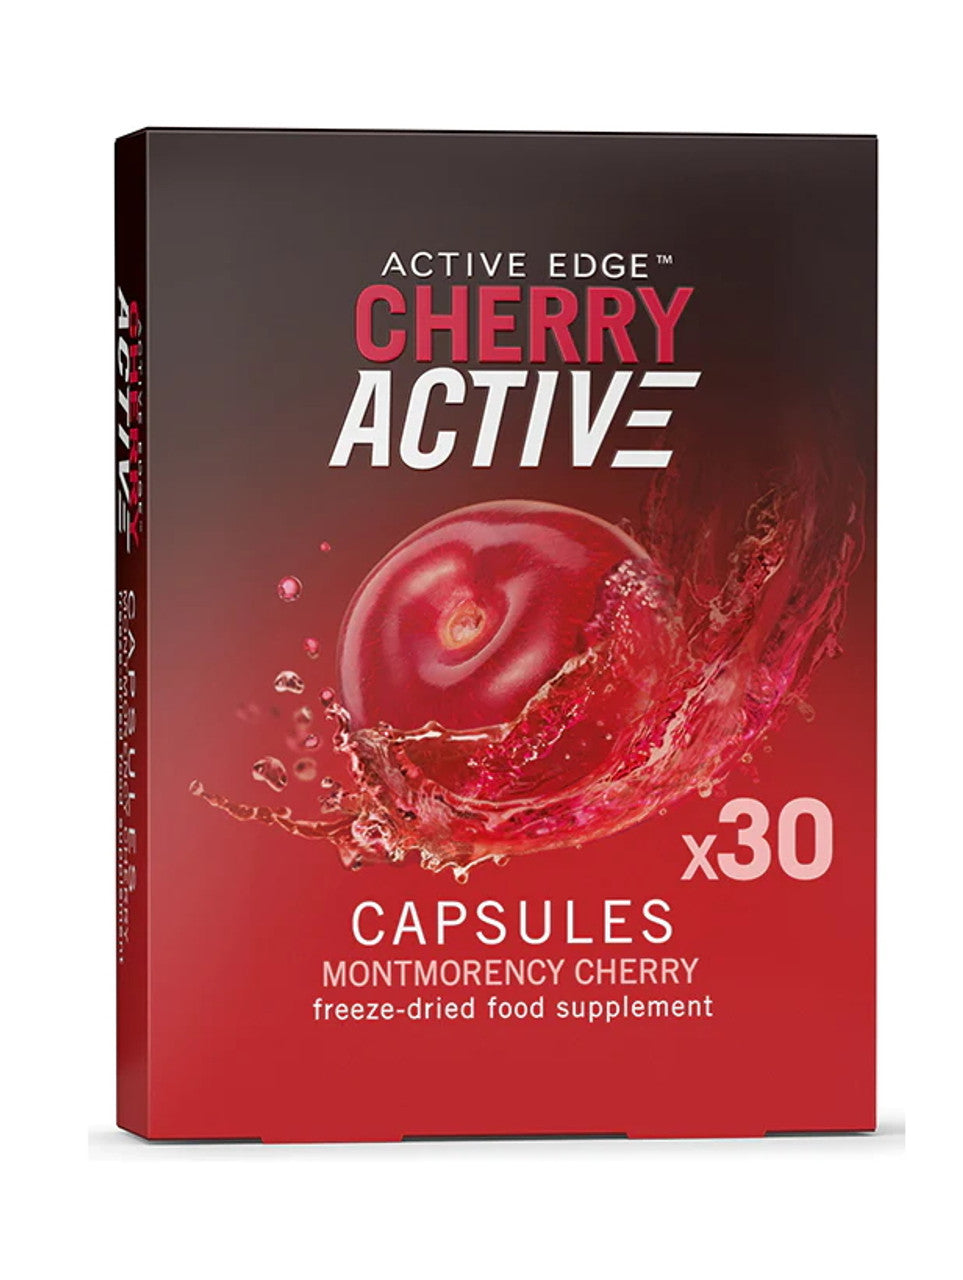 Active Edge Cherry Active Capsules